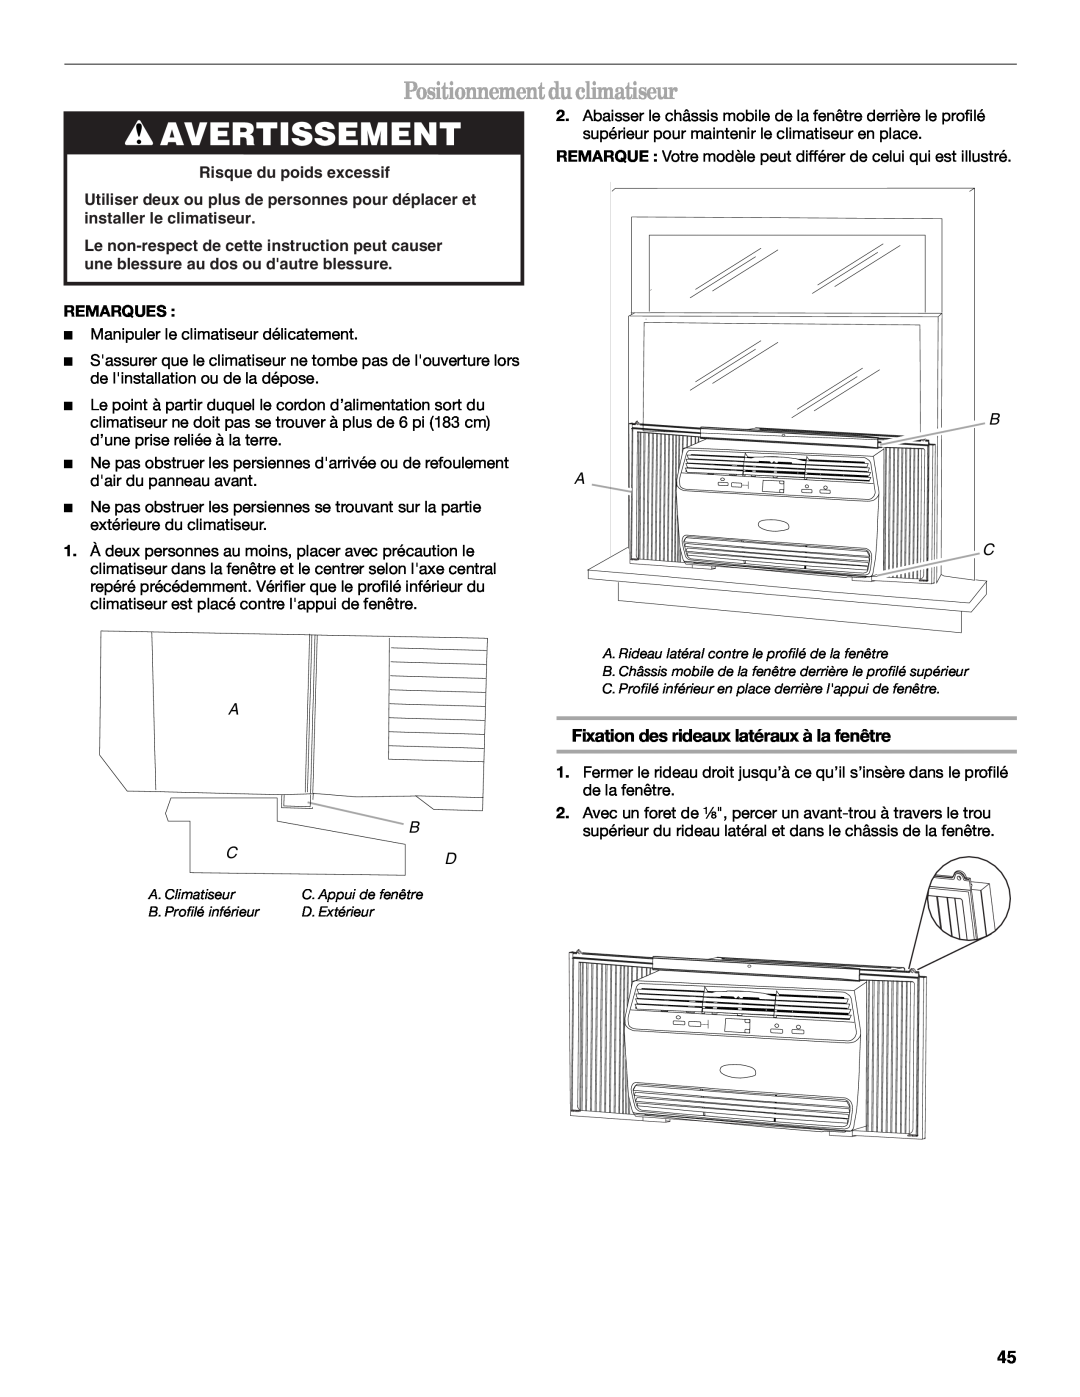 Whirlpool 66161279 manual Positionnement du climatiseur, Fixation des rideaux latéraux à la fenêtre, Avertissement, B A C 